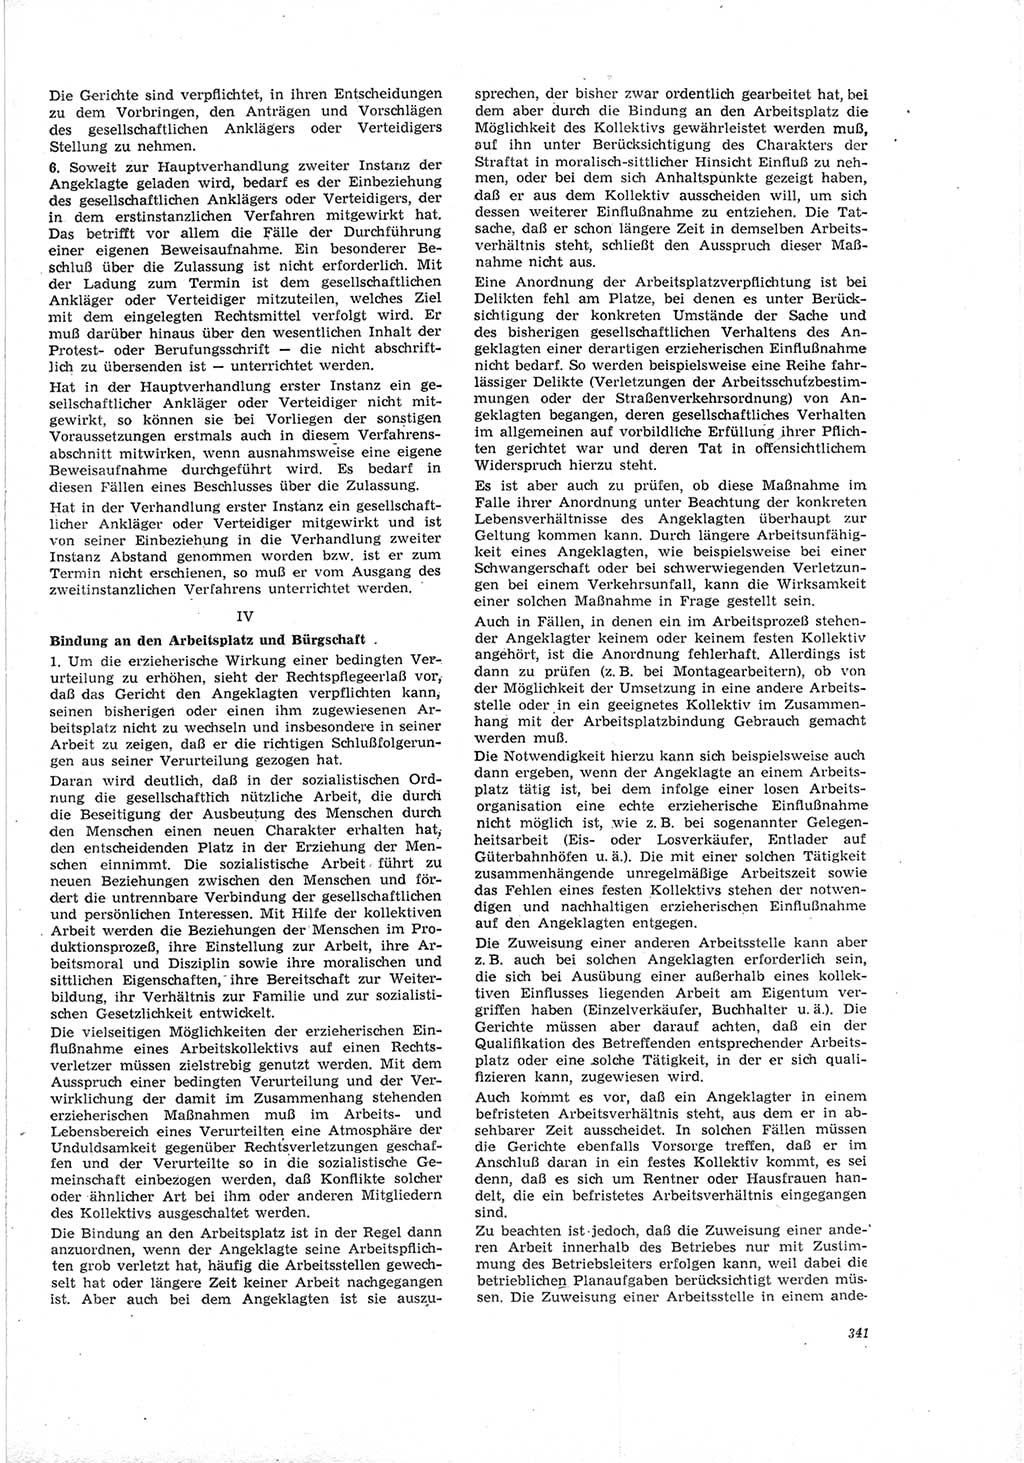 Neue Justiz (NJ), Zeitschrift für Recht und Rechtswissenschaft [Deutsche Demokratische Republik (DDR)], 19. Jahrgang 1965, Seite 341 (NJ DDR 1965, S. 341)